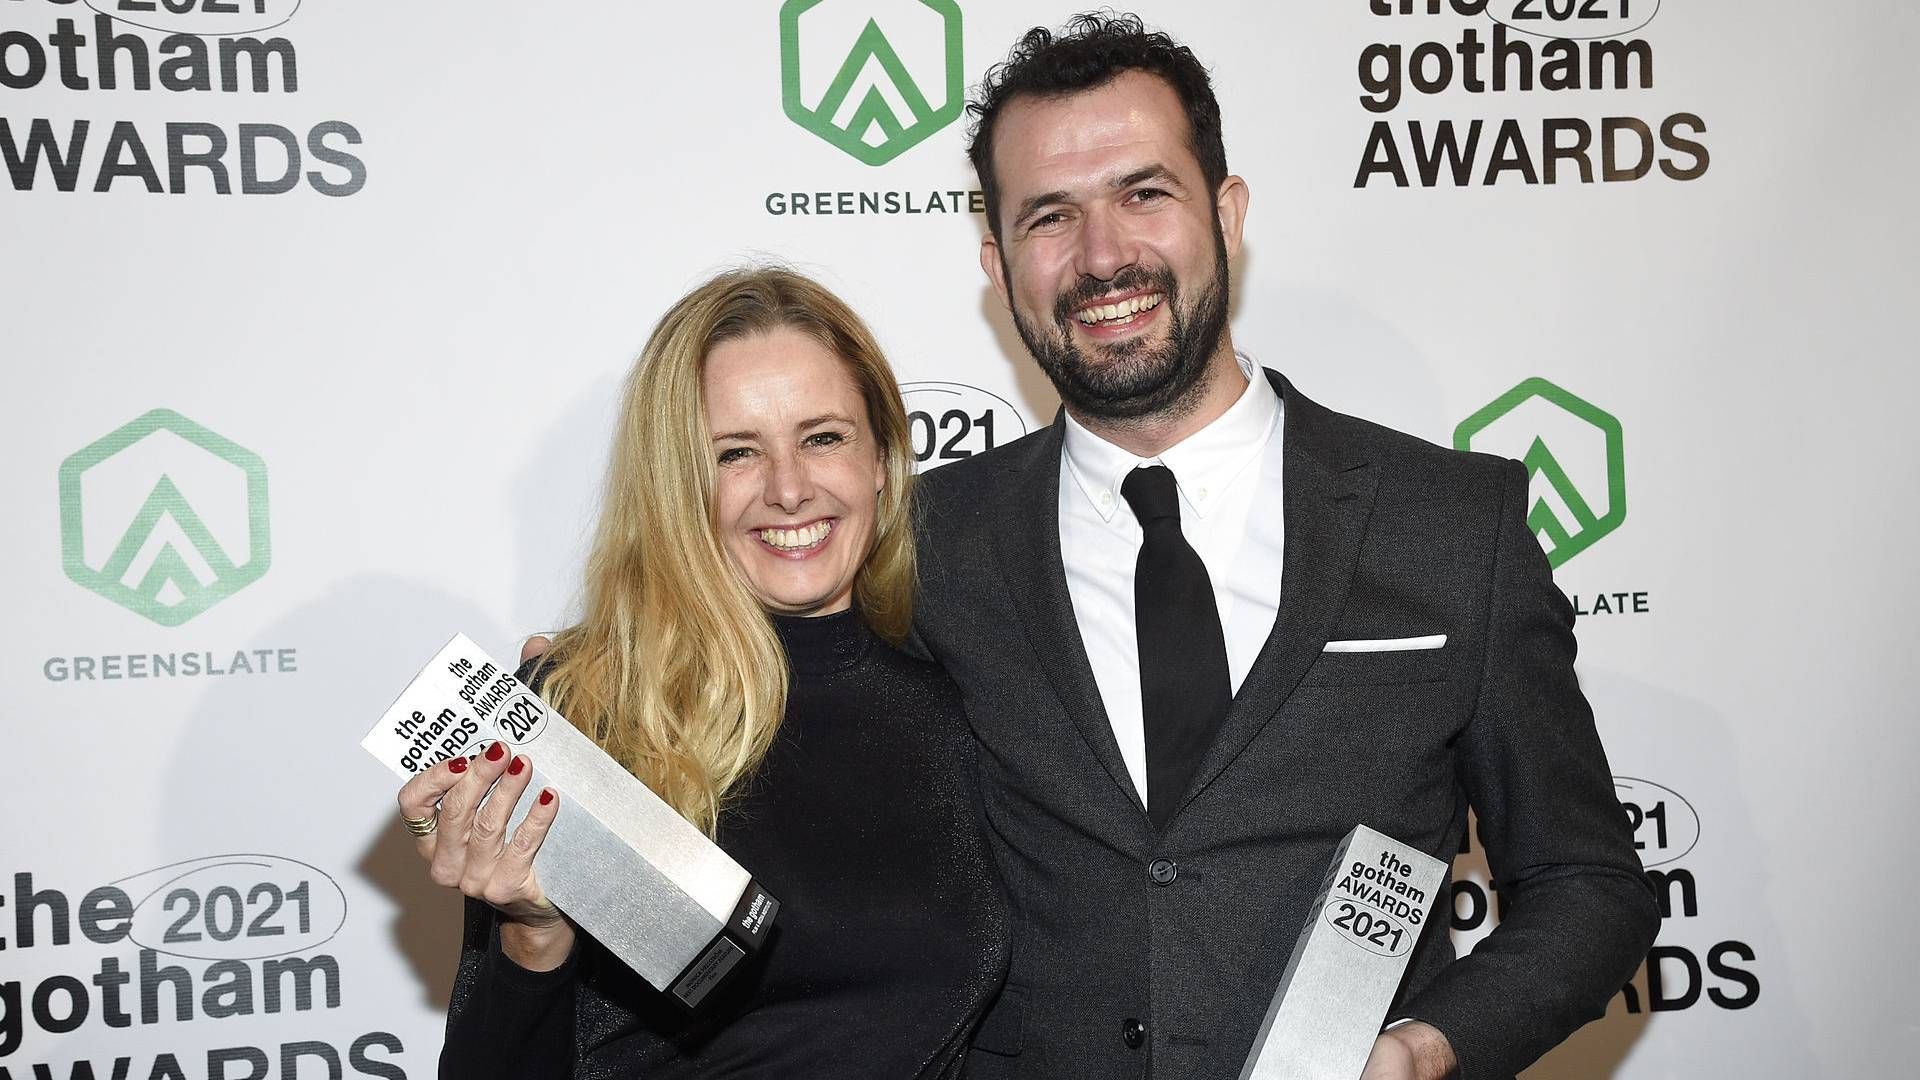 Jonas Poher Rasmussens film "Flugt" har modtaget flere fornemme priser, herunder storjuryens pris ved Sundance Film Festival i USA og Nordisk Råds Filmpris. | Foto: RitzauScanpix / Evan Agostini/Invision/AP/AP